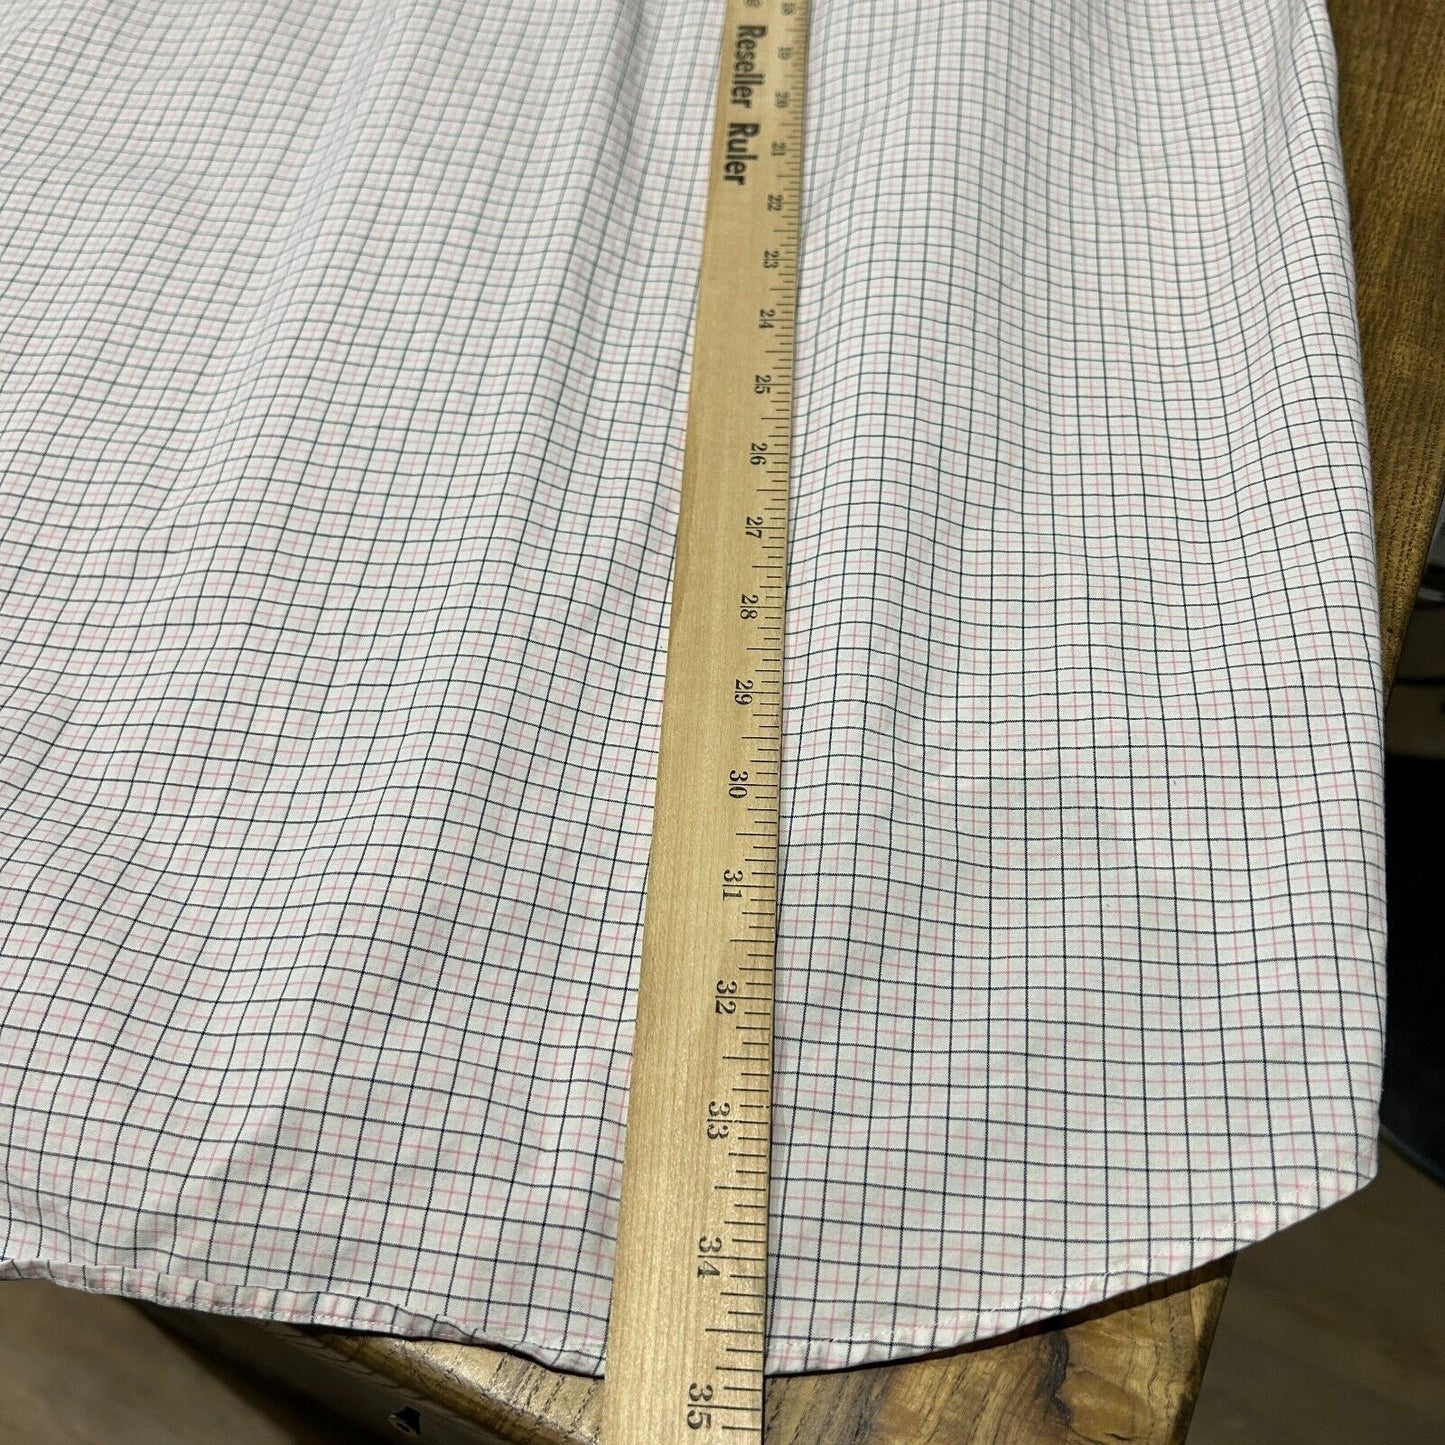 VINTAGE | Ralph Lauren POLO Classic Fit Button Down Shirt sz XL 17.5 Adult